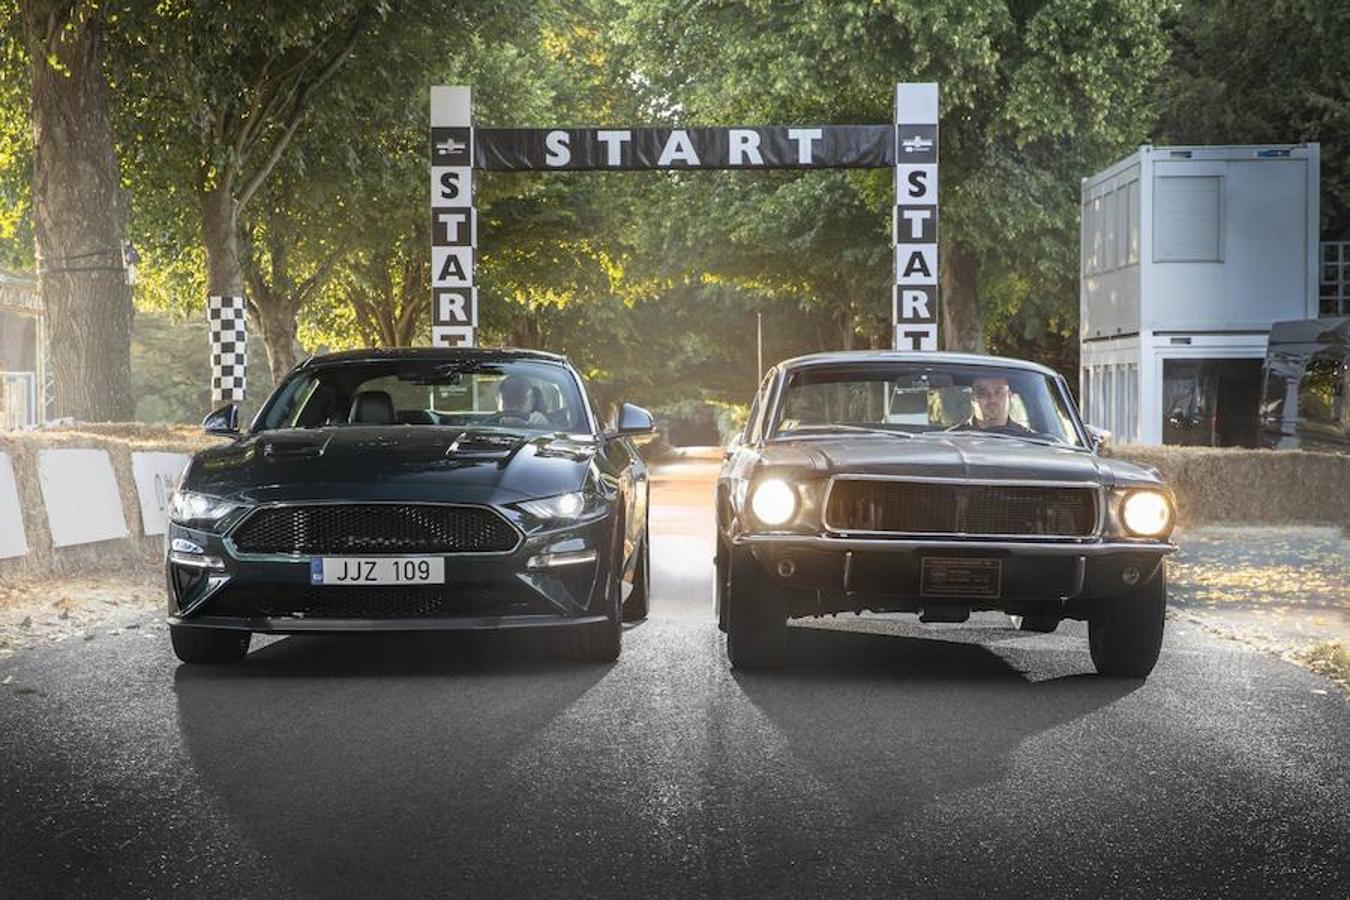 Mustang el "Bullit". El icónico Mustang de "Bullitt", conducido por Steve McQueen en el clásico de Warner Bros. Saldrá por primera vez fuera de los EE. UU en el Festival de la Velocidad de Goodwood 2018 junto al nuevo Ford Mustang BULLITT edición especial